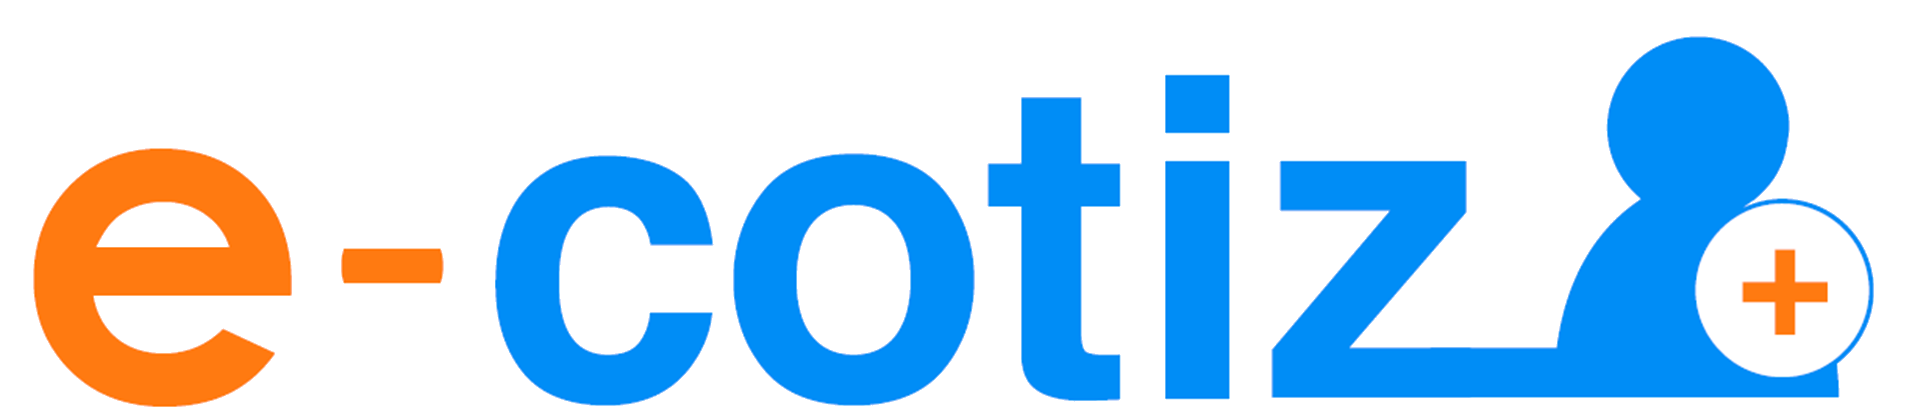 logo ECOTIZ